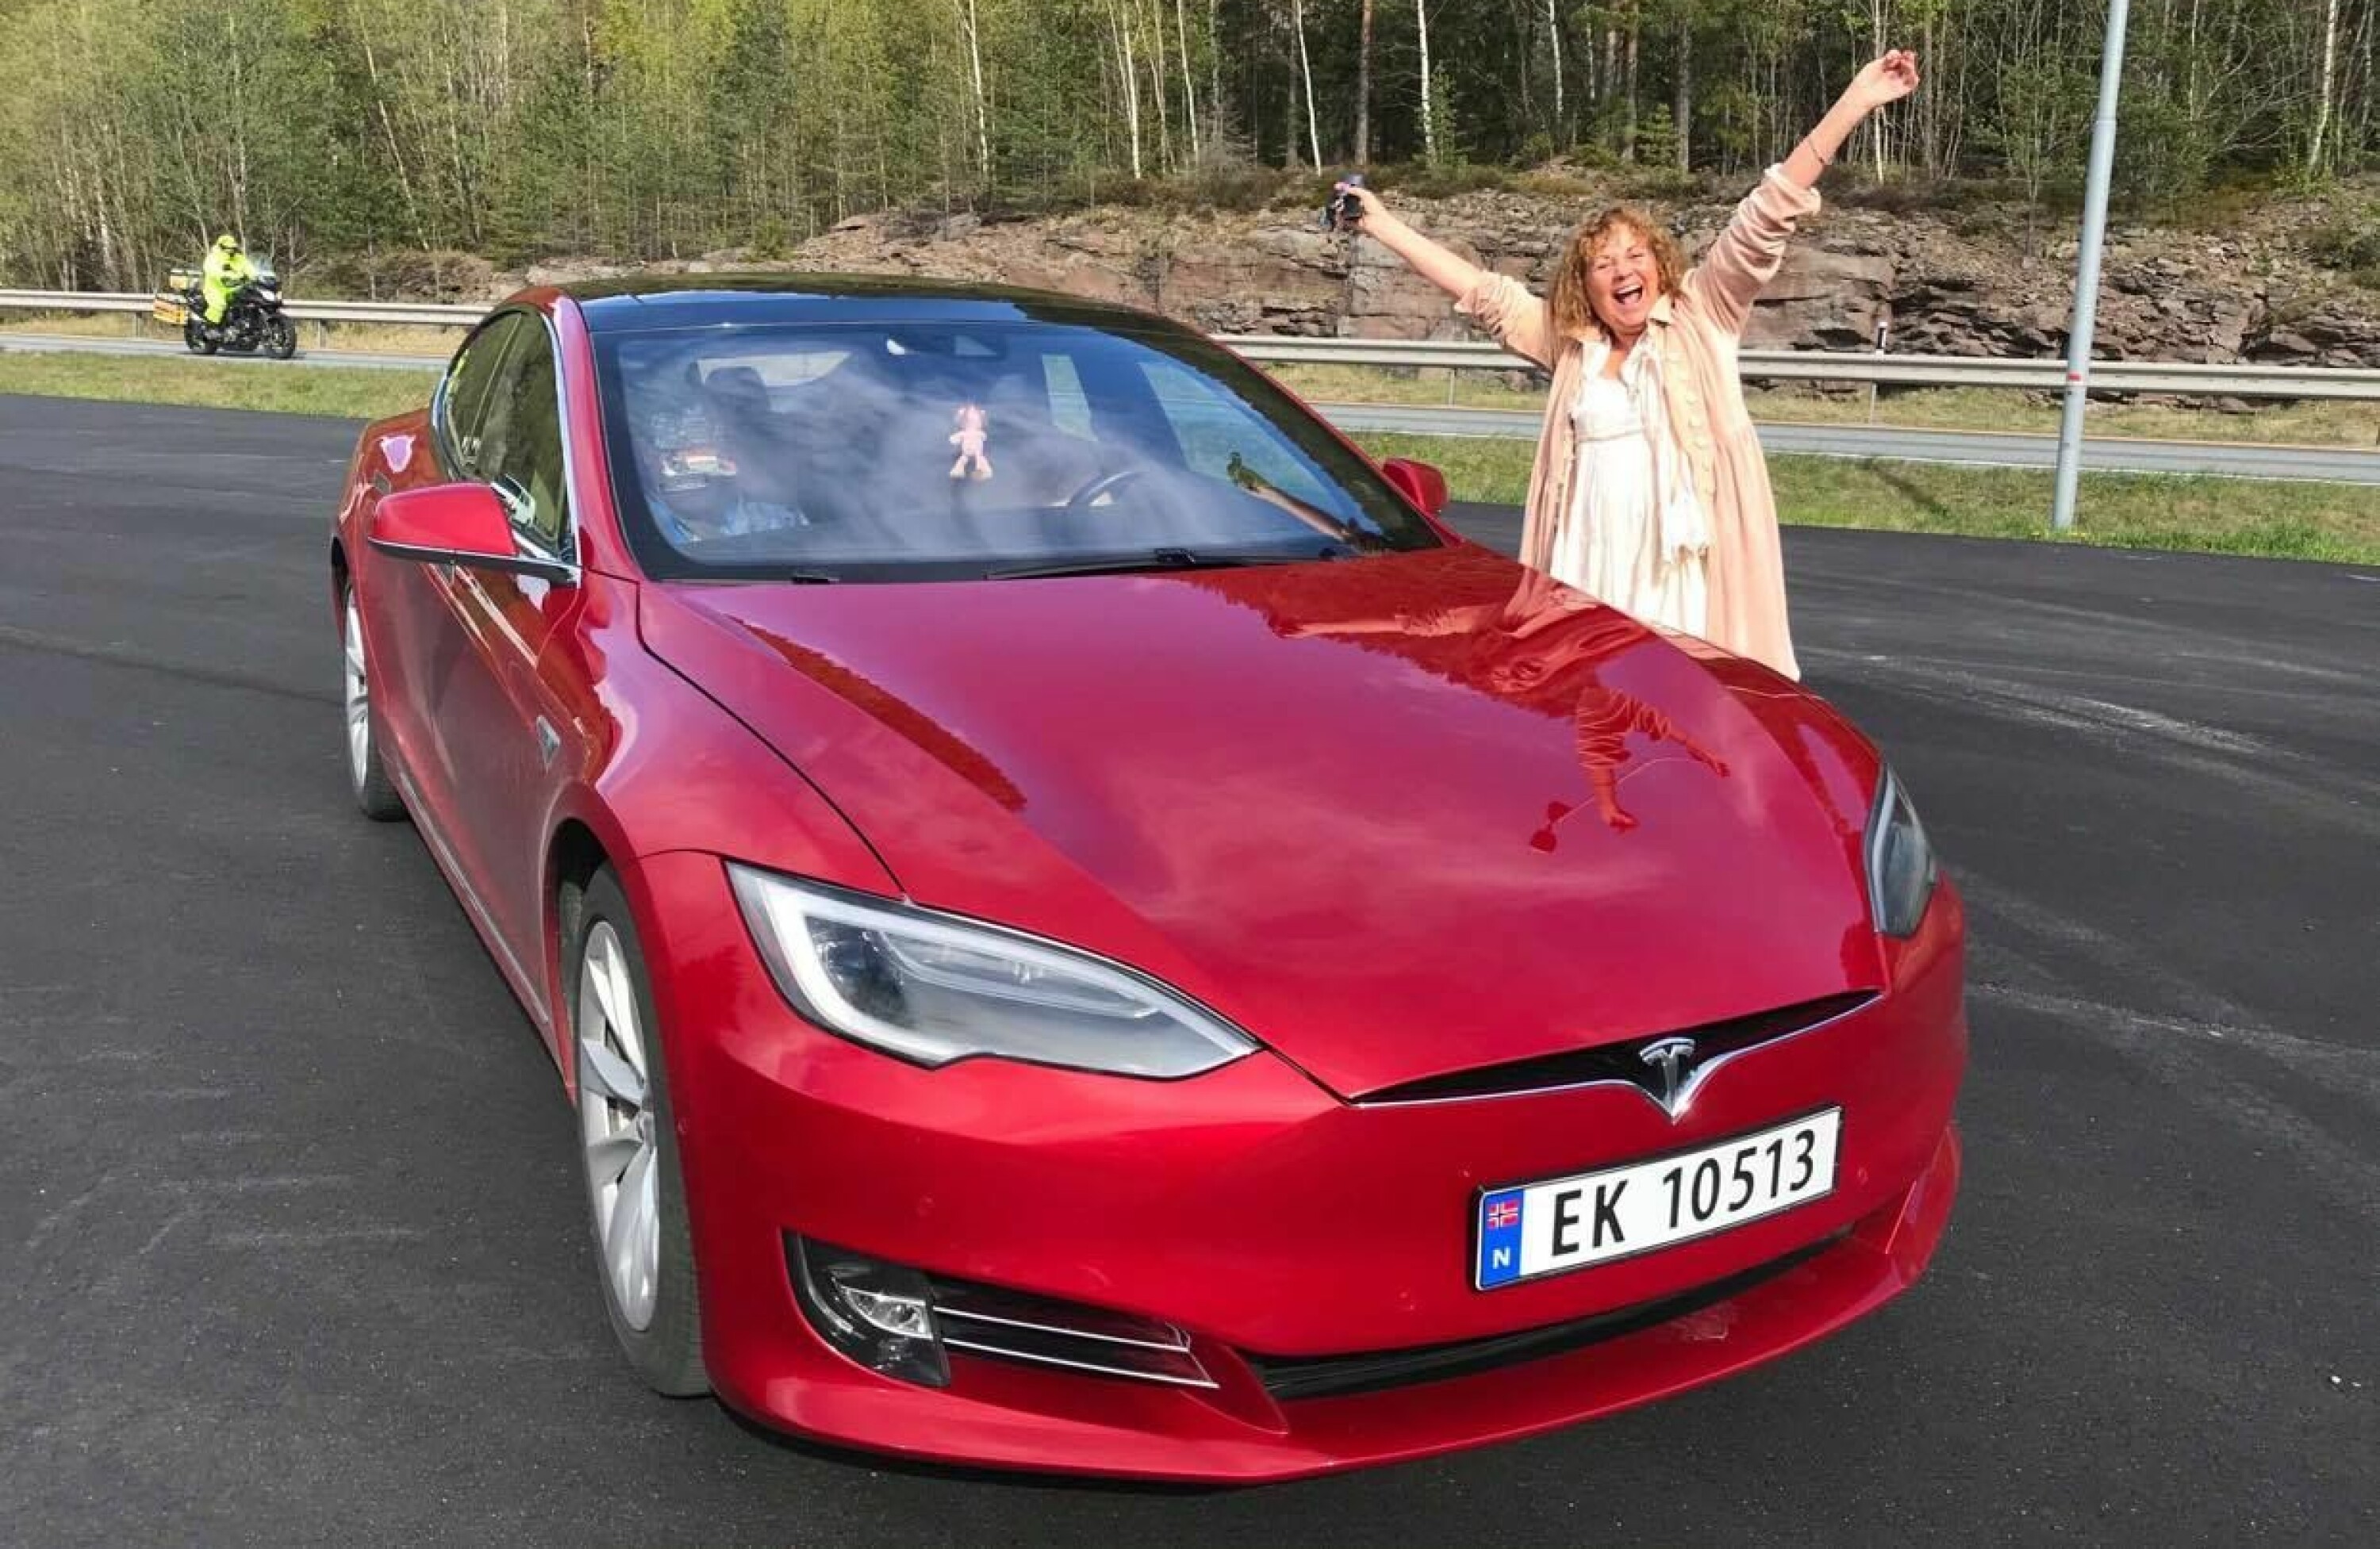 HYGGELIGE SVAR: I Facebook-gruppen Tesladamene blir alle spørsmål besvart på en god og hyggelig måte, lover Vigdis Margrethe Løver.